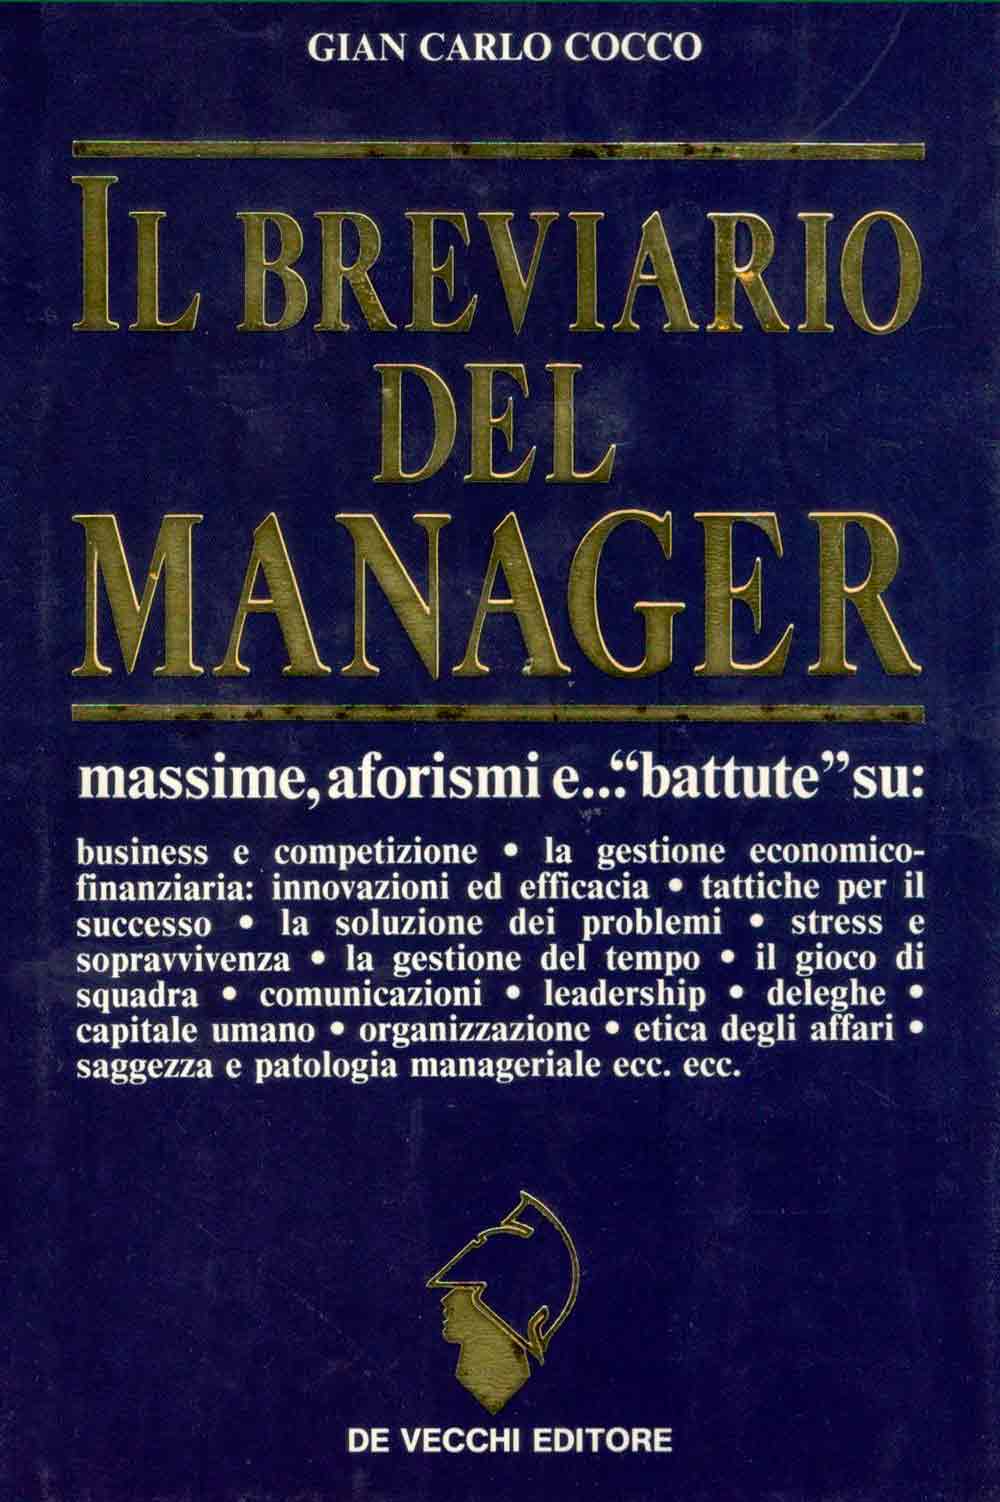 Il breviario del manager di Gian Carlo Cocco